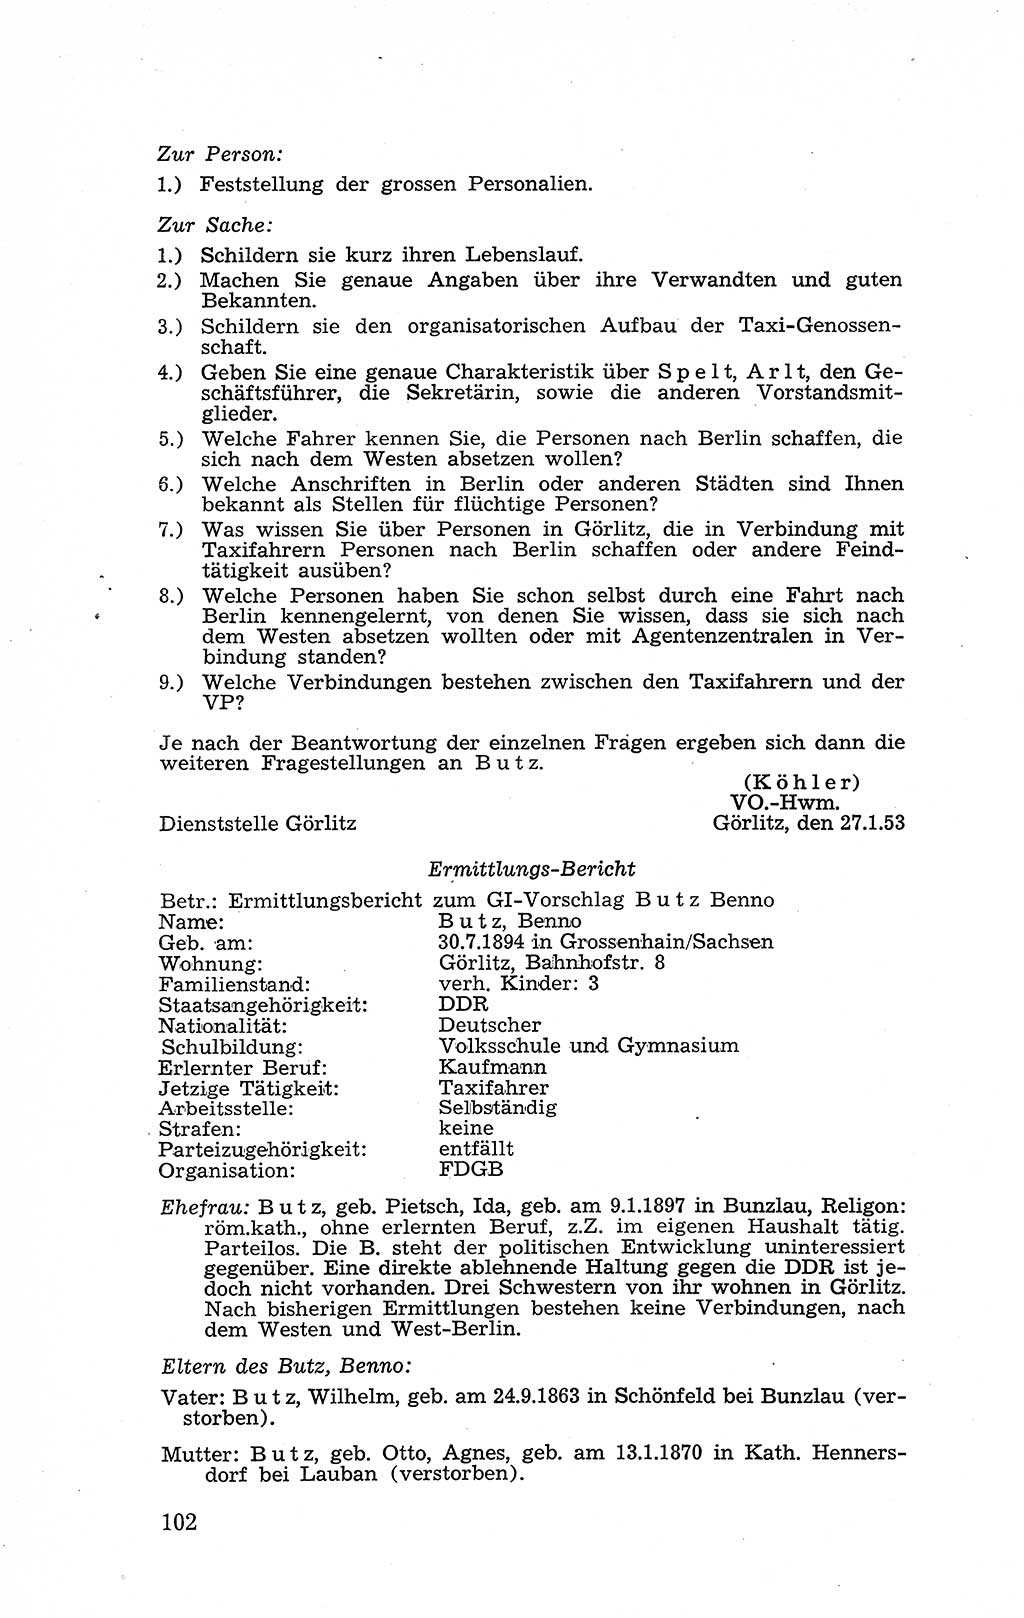 Recht in Fesseln, Dokumente, Internationale Juristen-Kommission [Bundesrepublik Deutschland (BRD)] 1955, Seite 102 (R. Dok. IJK BRD 1955, S. 102)